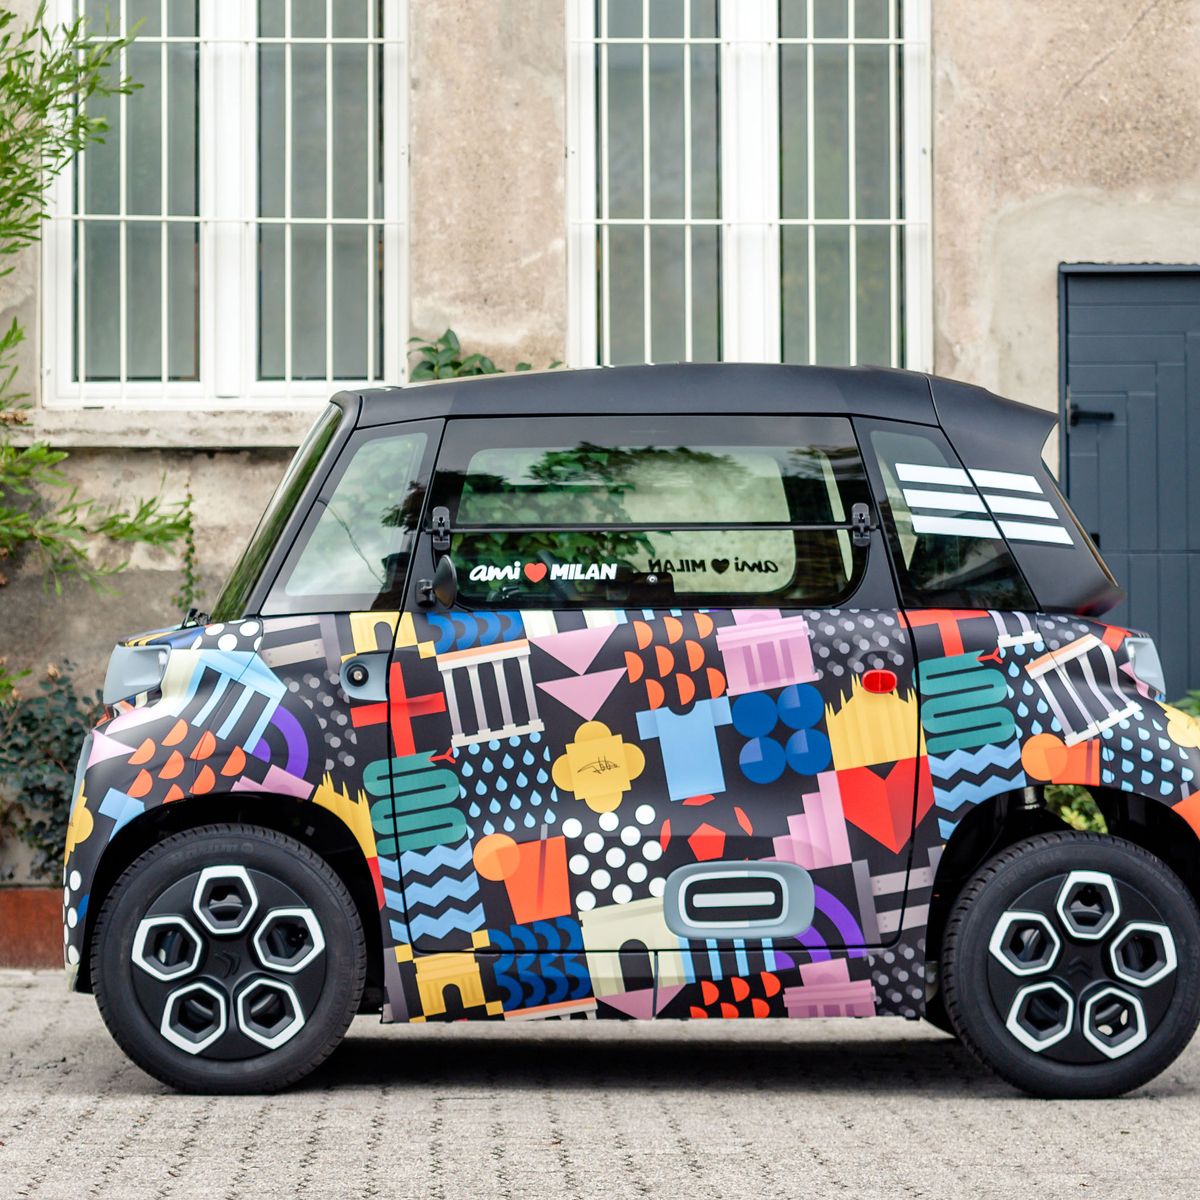 Citroën Ami -100% ëlectric, la smart city alla prova